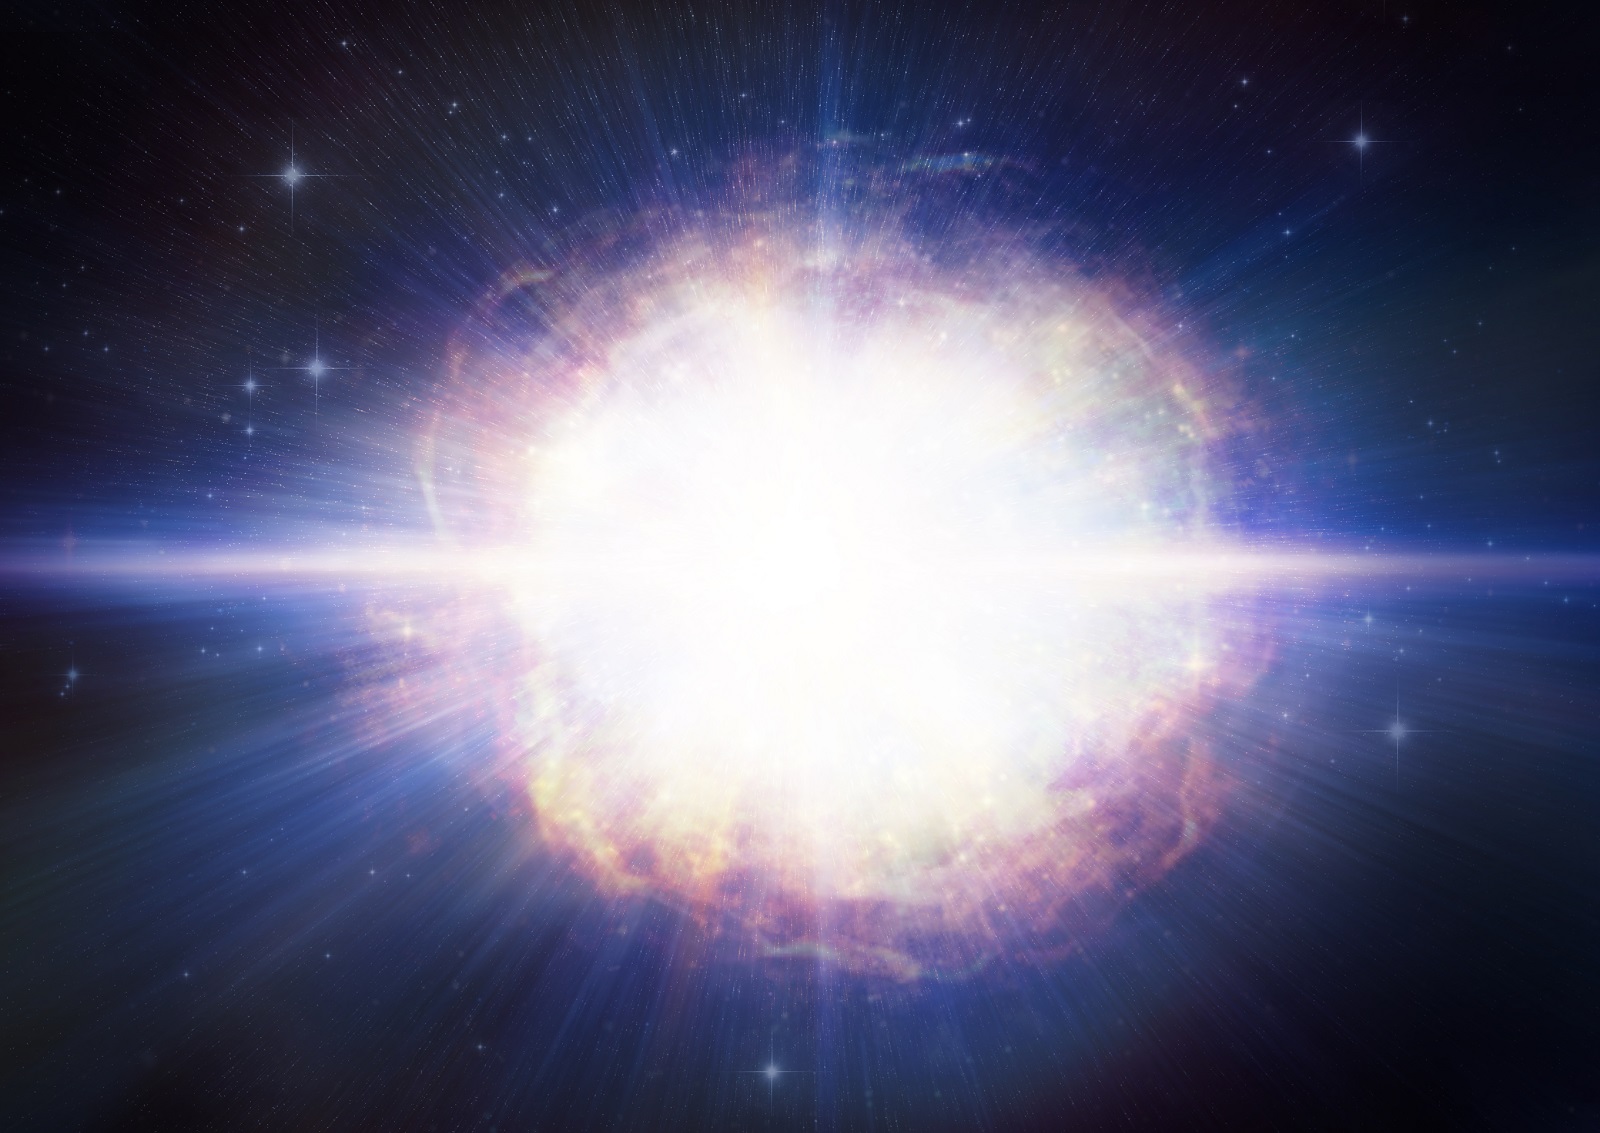 Cette vue d’artiste montre SN2016aps, la supernova la plus lumineuse, la plus énergétique et la plus massive jamais observée. © M. Weiss, Center for Astrophysics Harvard & Smithsonian